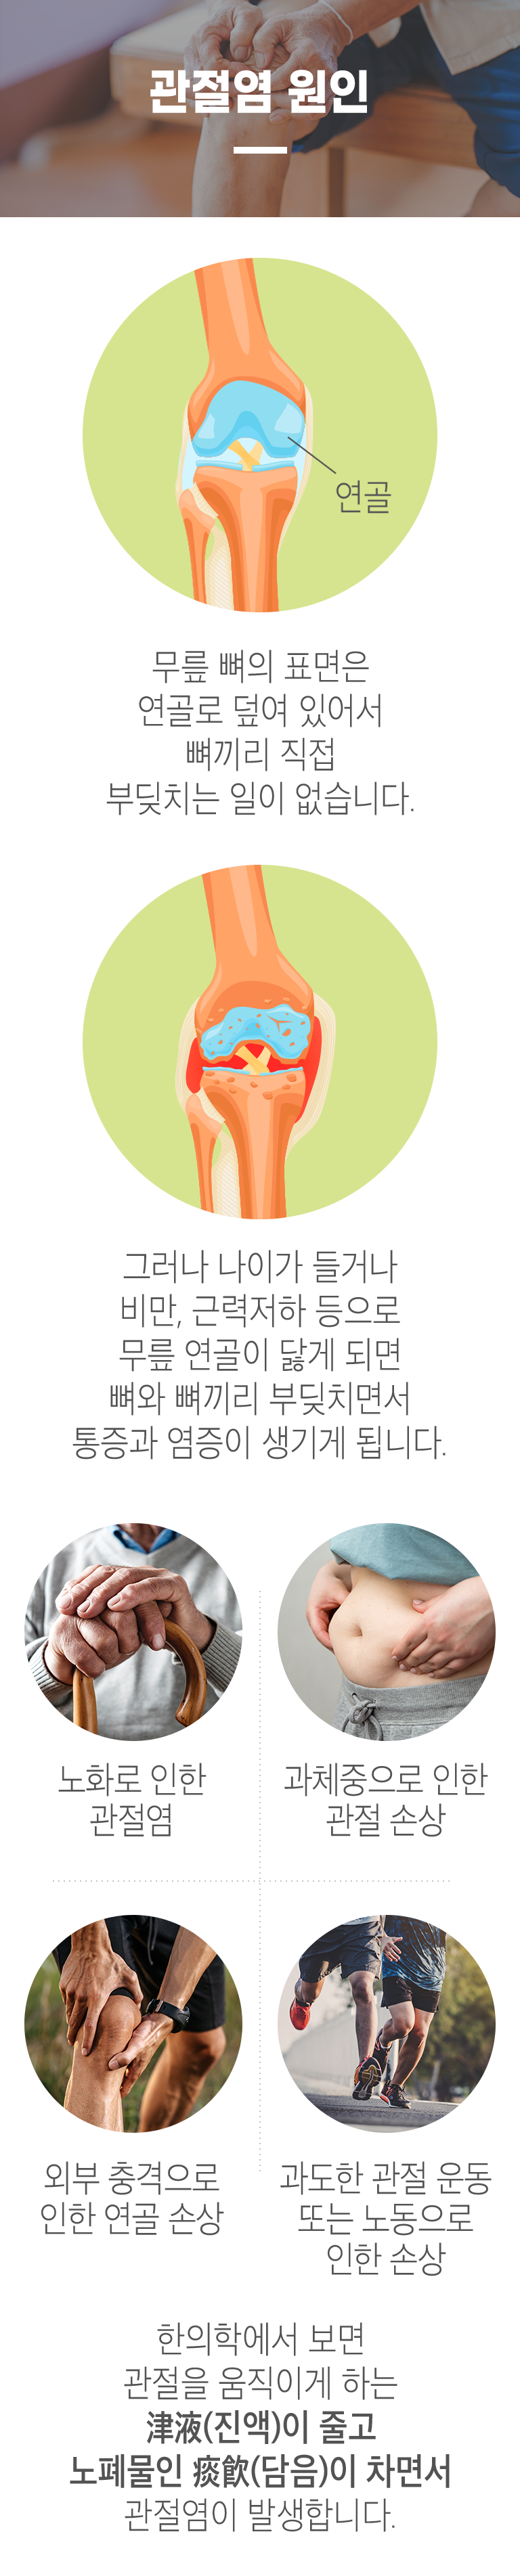 관절염 원인 ▷ 무릎 뼈의 표면은 연골로 덮여 있어서 뼈끼리 직접 부딪치는 일이 없습니다. 그러나 나이가 들거나 비만, 근력저하 등으로 무릎 연골이 닳게 되면 뼈와 뼈끼리 부딪히면서 통증과 염증이 생기게 됩니다. 노화로 인한 관절염, 과체중으로 인한 관절 손상, 외부 충격으로 인한 연골 손상, 과도한 관절 운동 또는 노동으로 인한 손상. 한의학에서 보면 관절을 움직이게 하는 津液(진액)이 줄고 노폐물인 痰飮)이 차면서 관절염이 발생합니다.